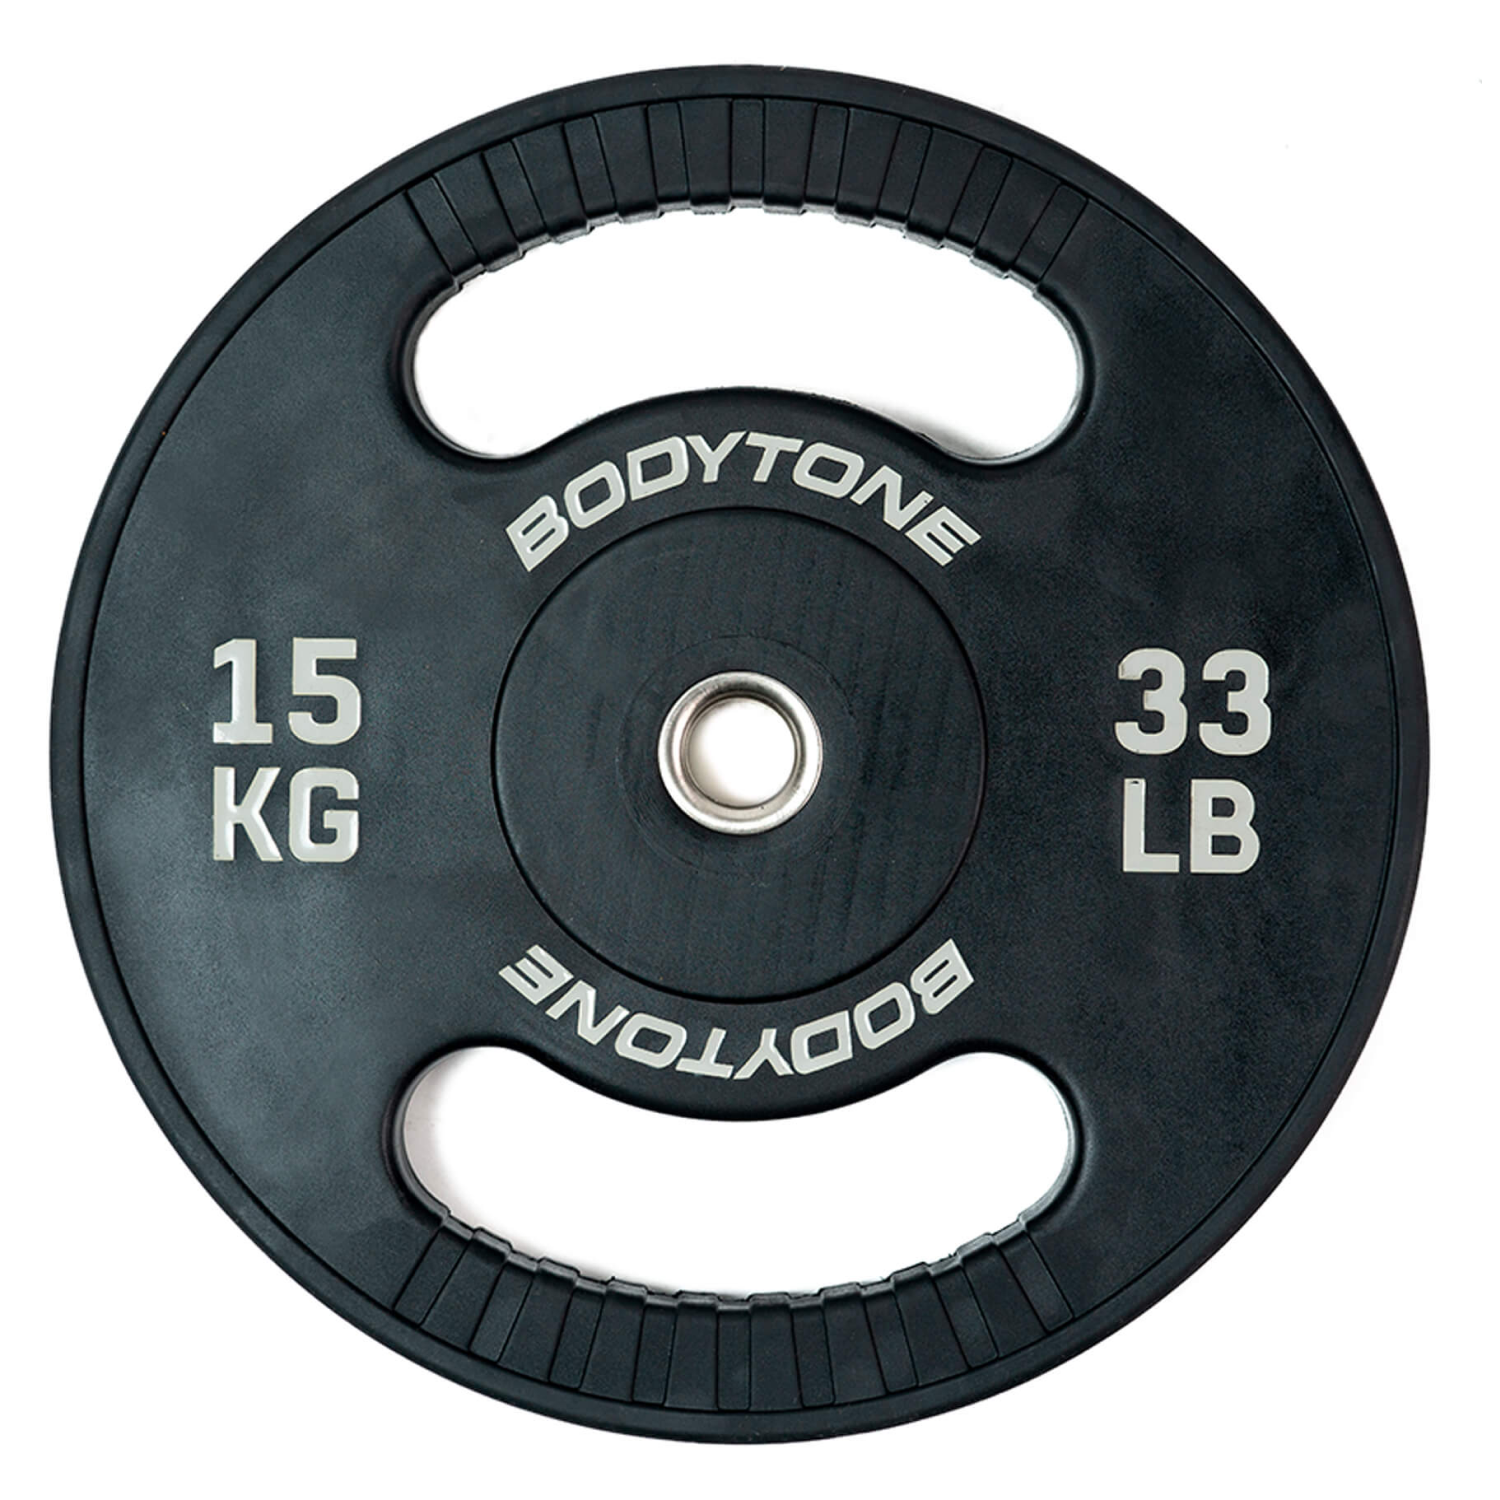 Edición Frente agradable Disco de goma de 15 kg con agarre — Bodytone